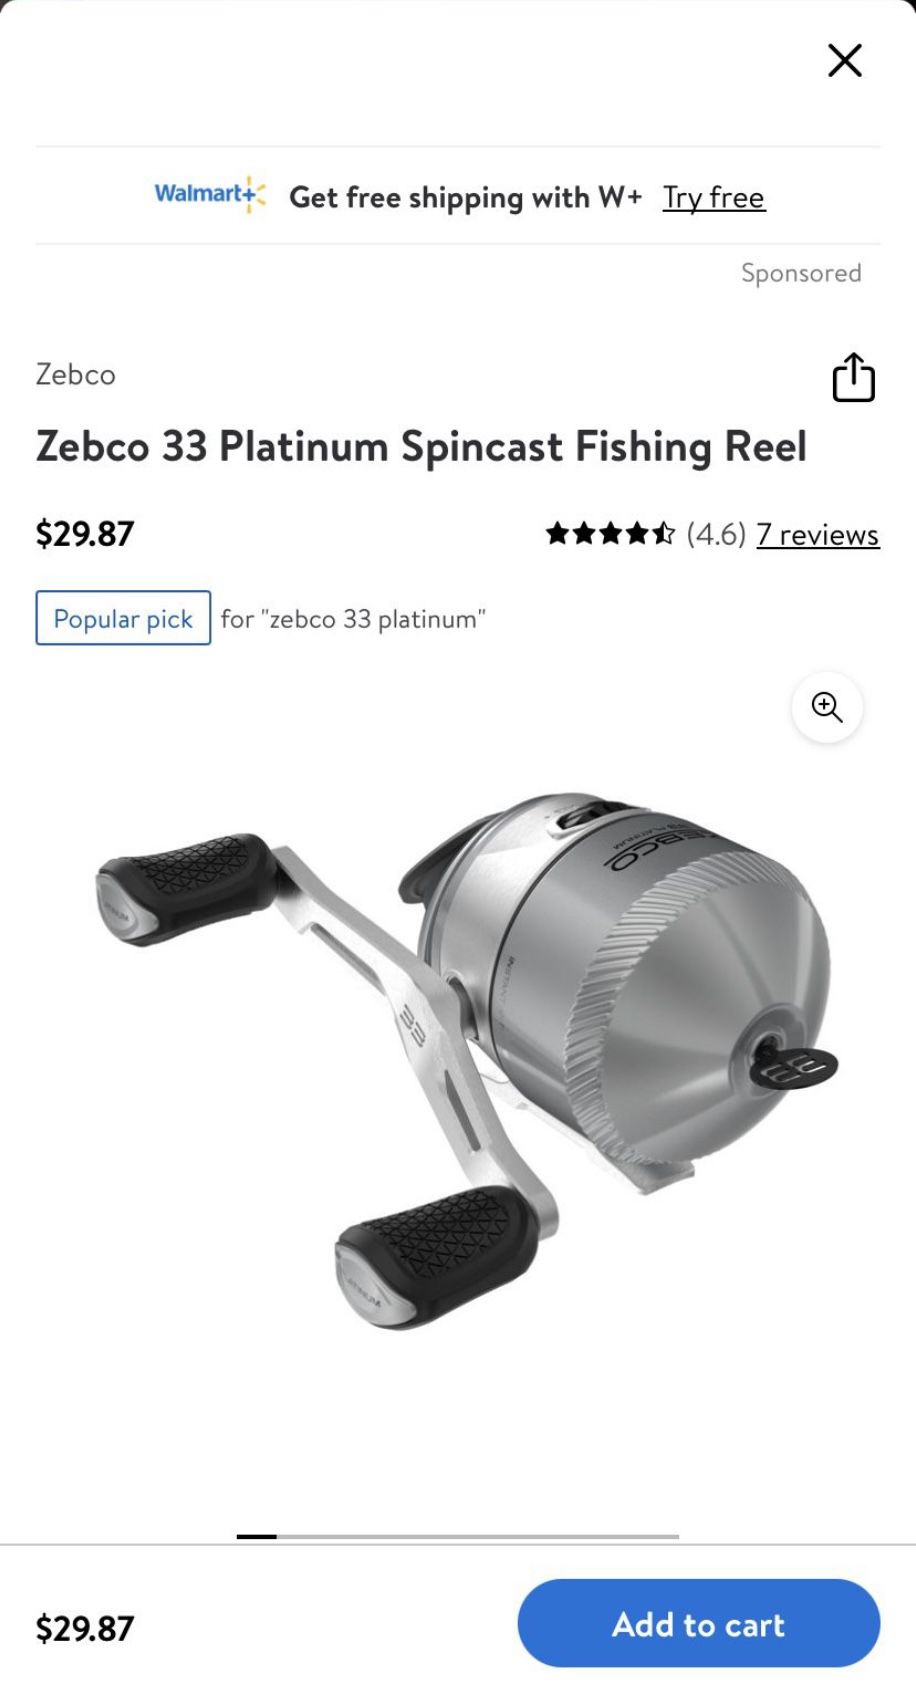 Zebco 33 Spincast Fishing Reel 